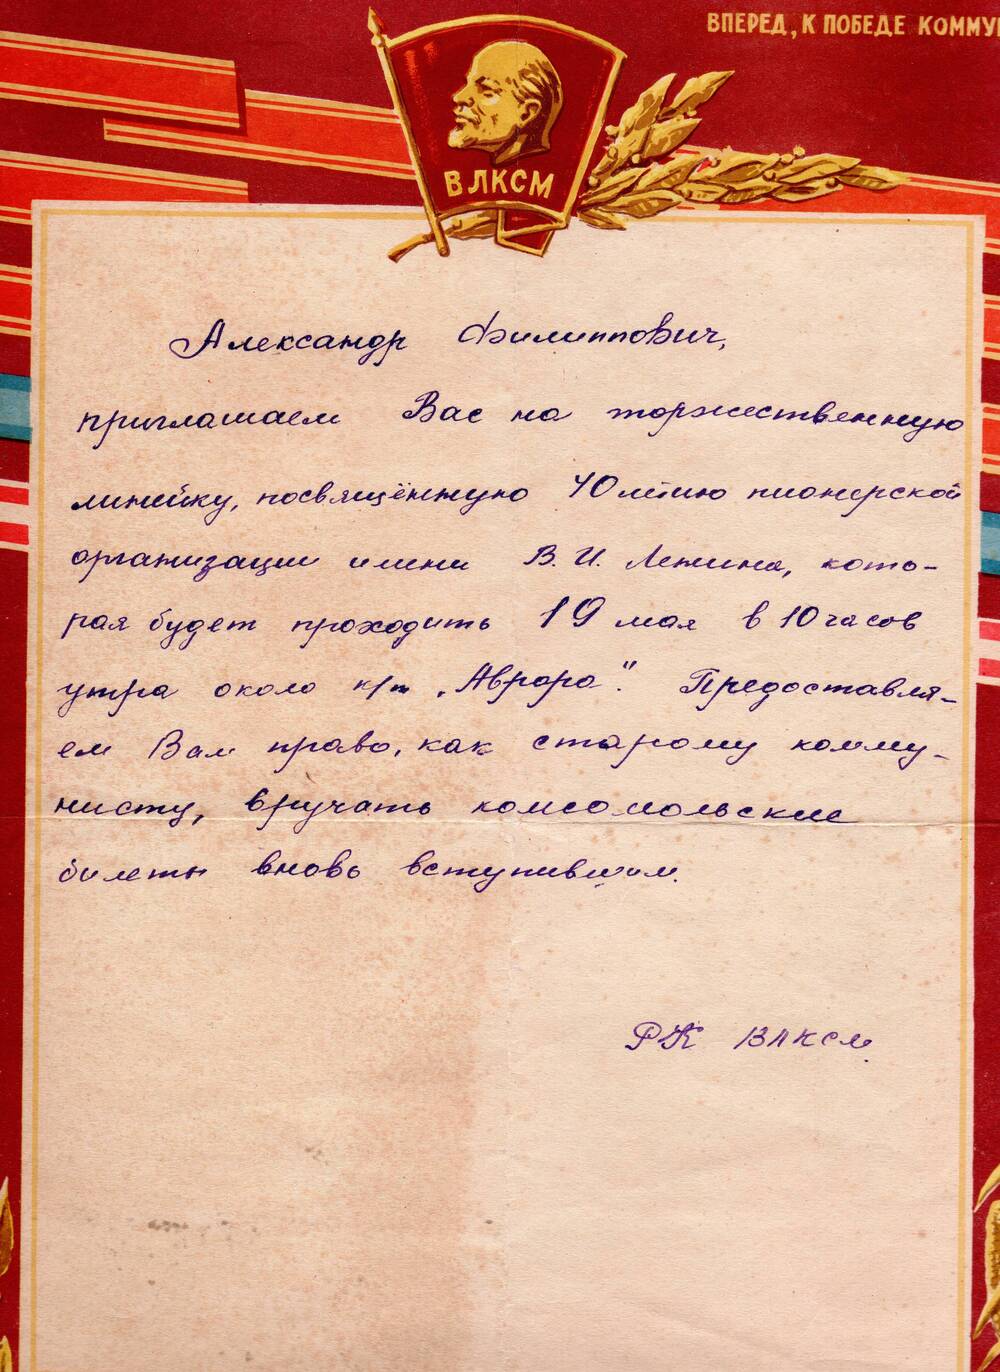 Приглашение на торжественную линейку на имя Отрощенко Александра Филипповича